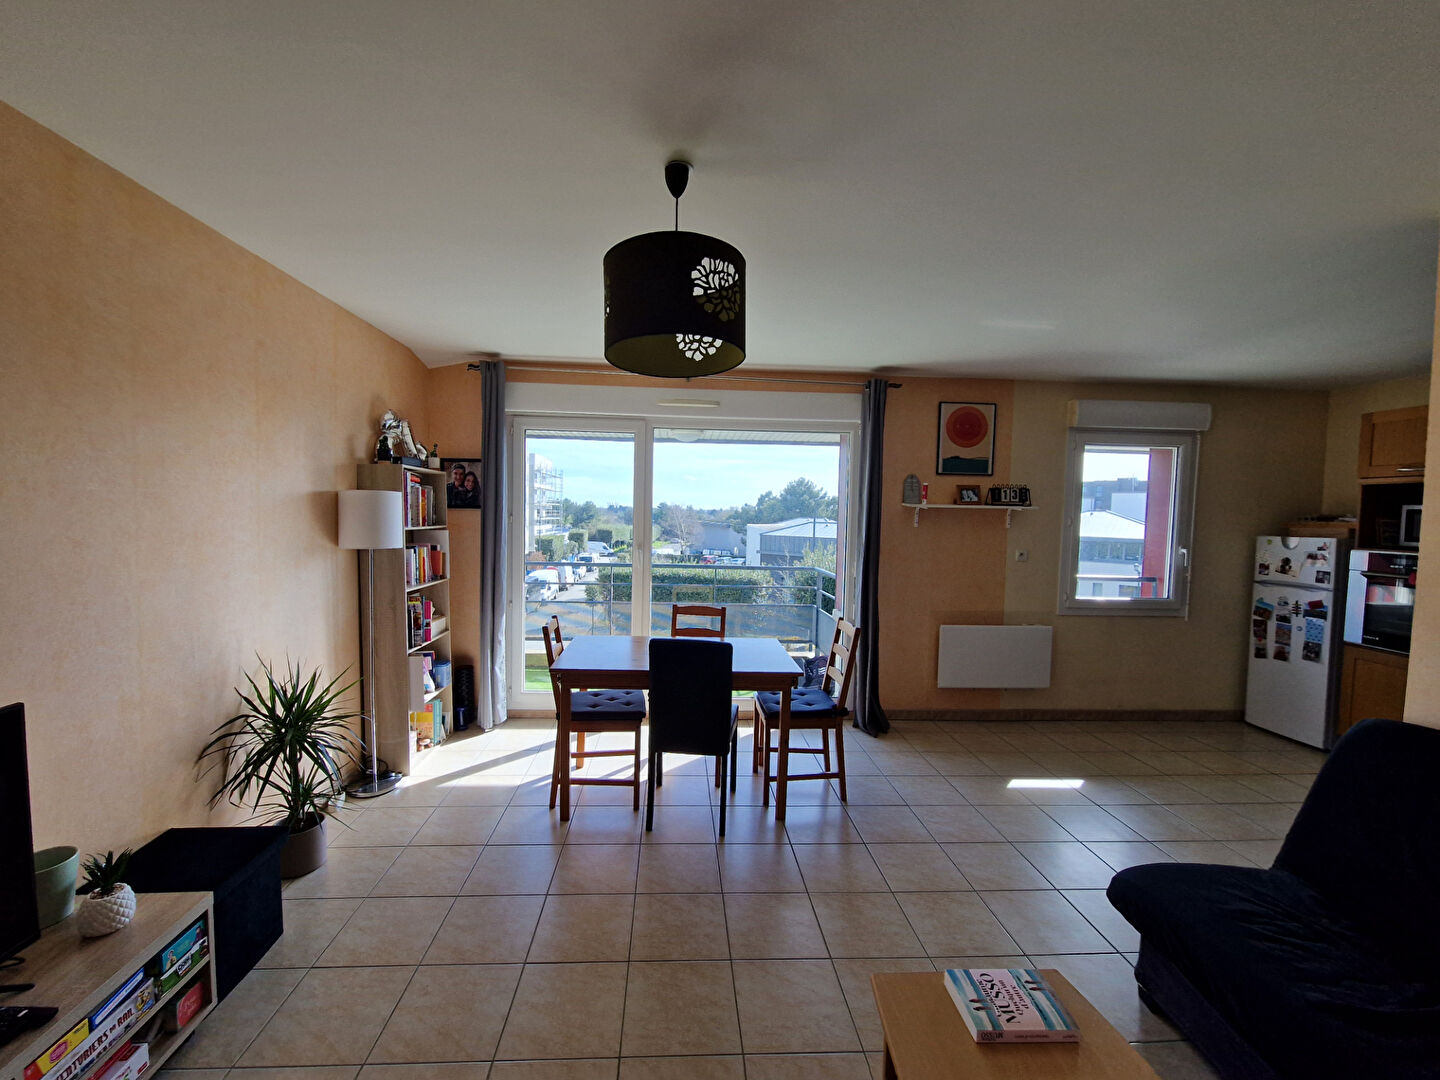 Appartement 2 pièces - 55 m² environ - 55400622f.jpg | Kermarrec Habitation